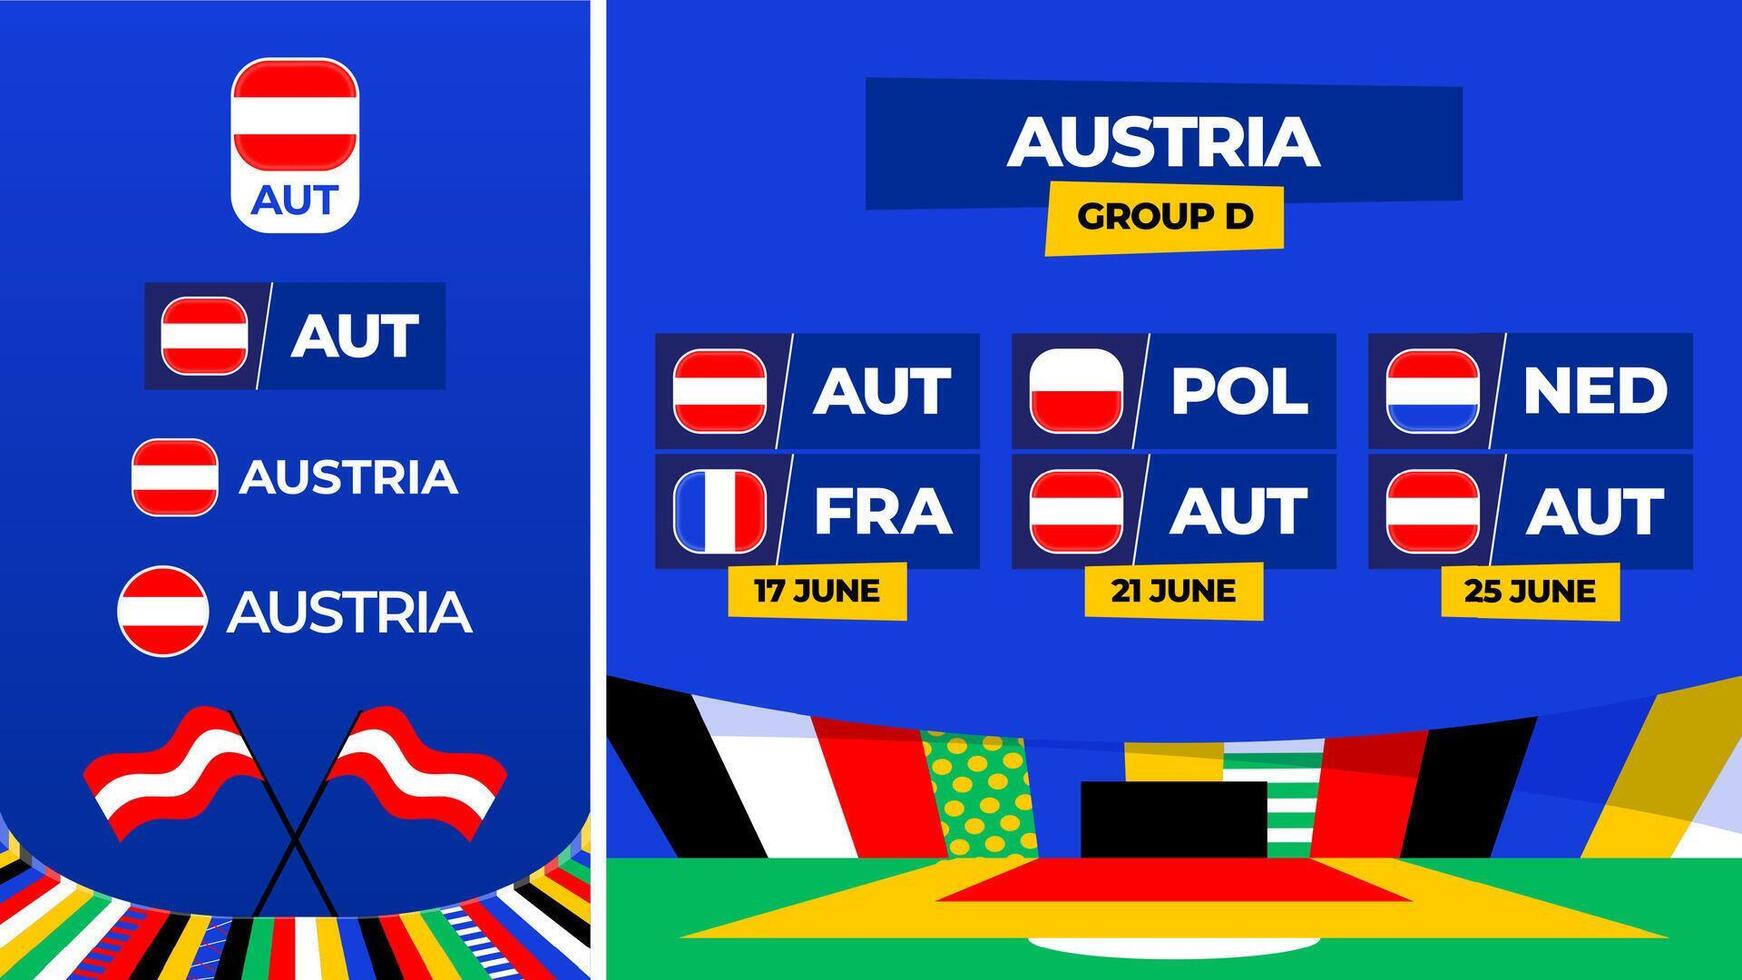 Oostenrijk Amerikaans voetbal 2024 bij elkaar passen versus set. nationaal team vlag 2024 en groep stadium kampioenschap bij elkaar passen versus teams vector